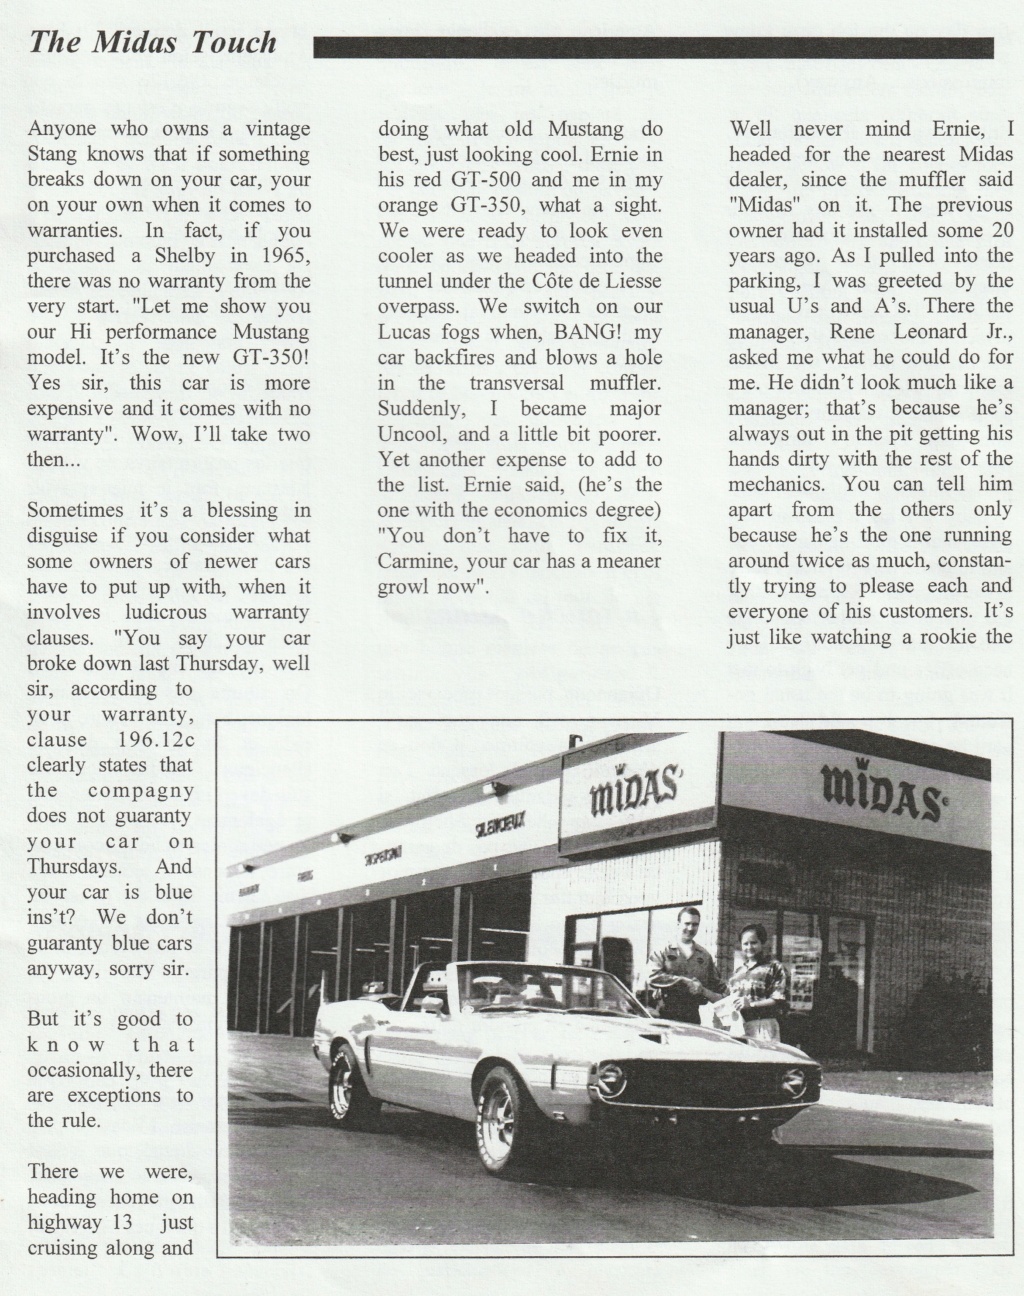 Montréal Mustang dans le temps! 1981 à aujourd'hui (Histoire en photos) - Page 8 Img_2327